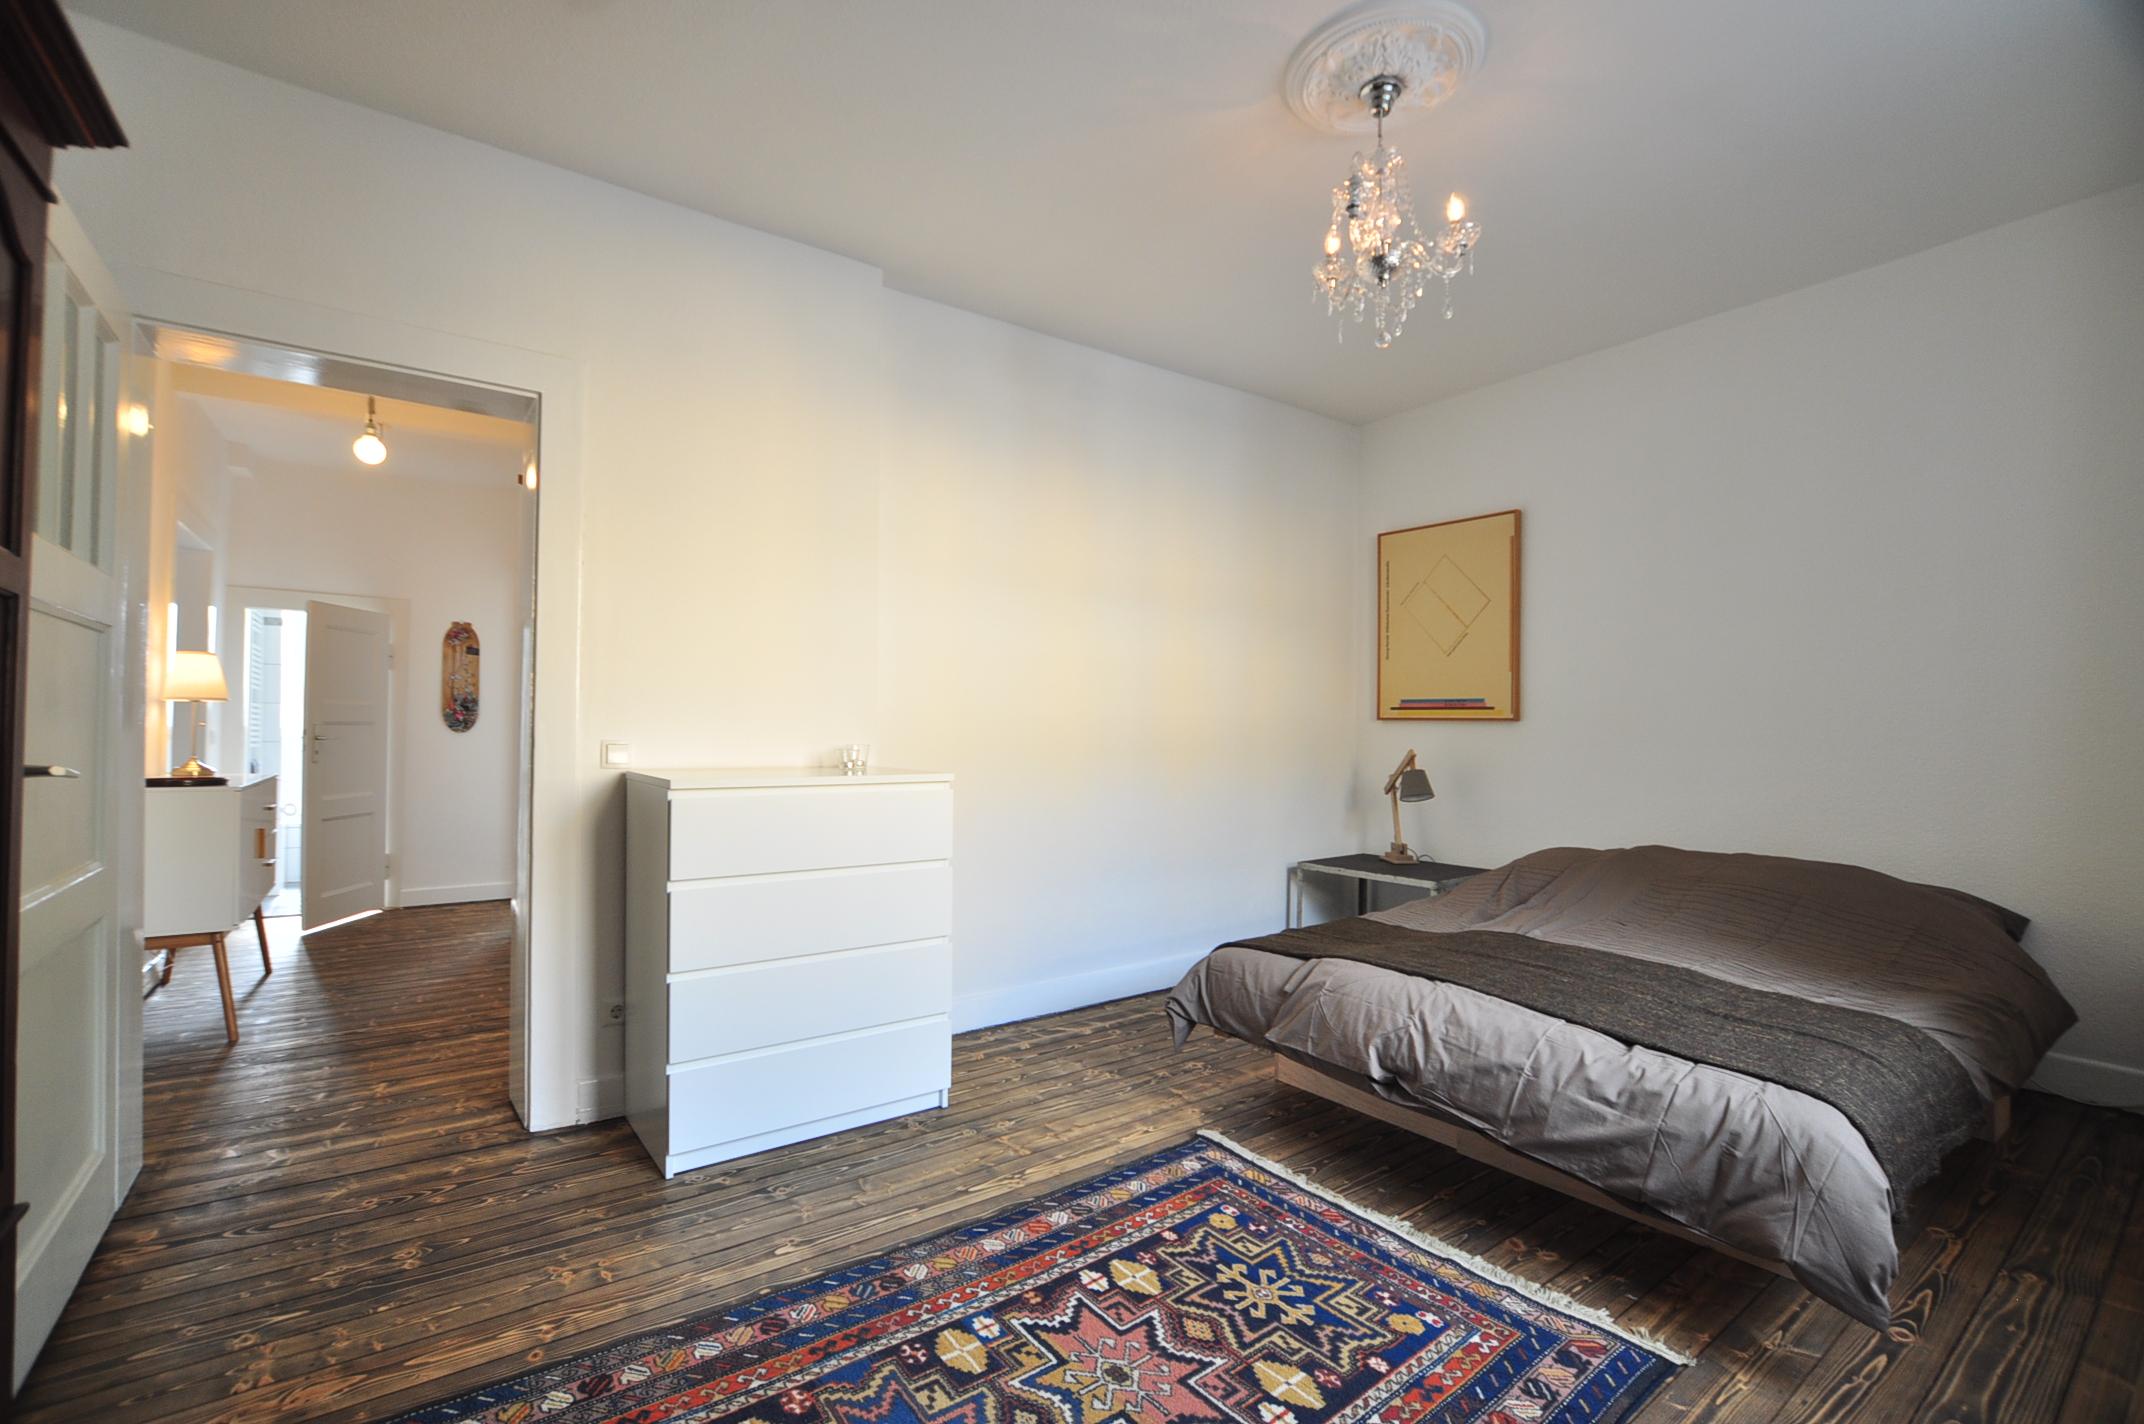 Schlafzimmer _ möblierte Wohnung #kronleuchter ©e-rent Agentur / Alina Edelstein